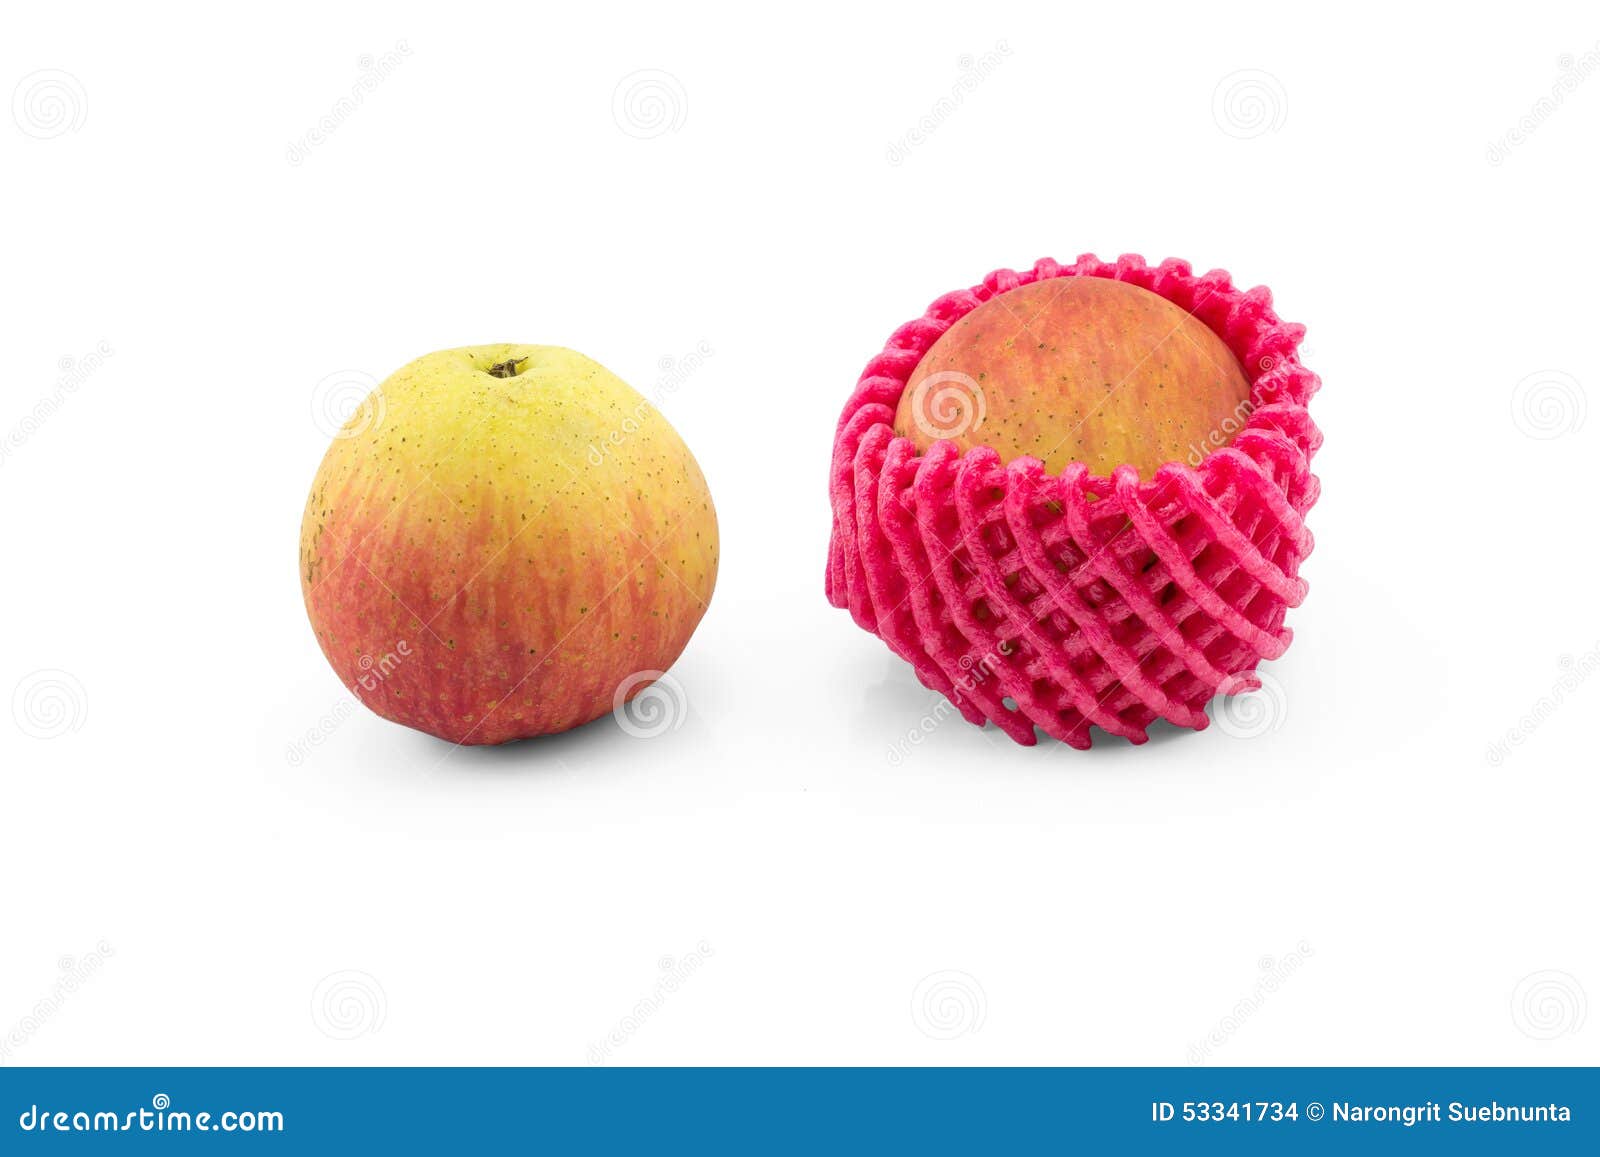 Mela normale e mela con la rete di protezione della schiuma su briciolo isolato. Mela normale e mela con la rete di protezione della schiuma sulla foto bianca isolata del fondo